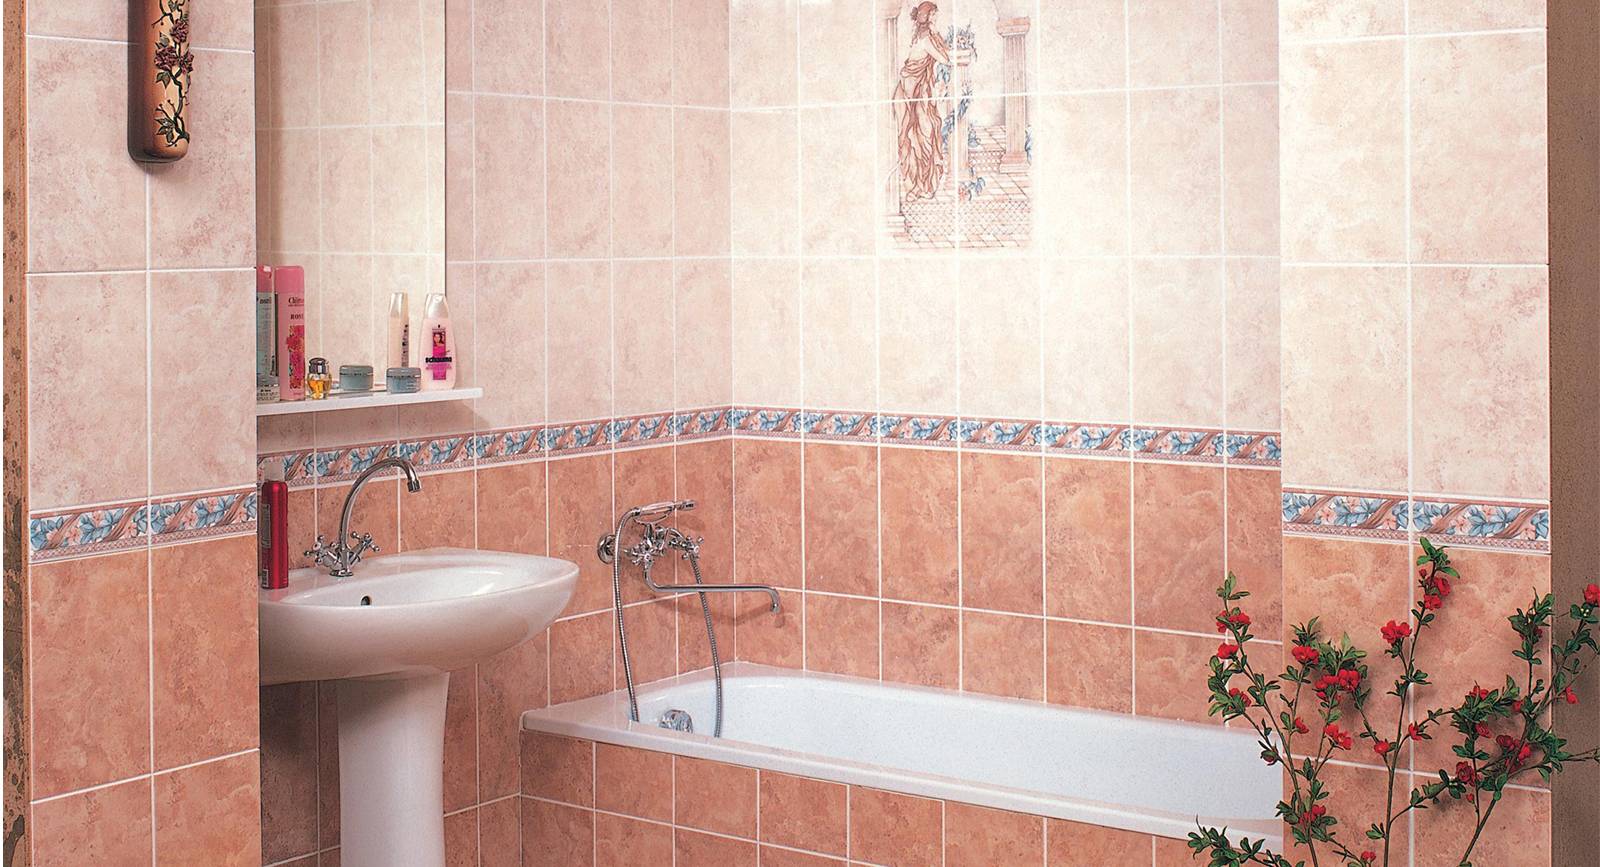 Плитка для ванной комнаты недорого от 200 руб до 500 рублей фото дизайн для маленькой площади